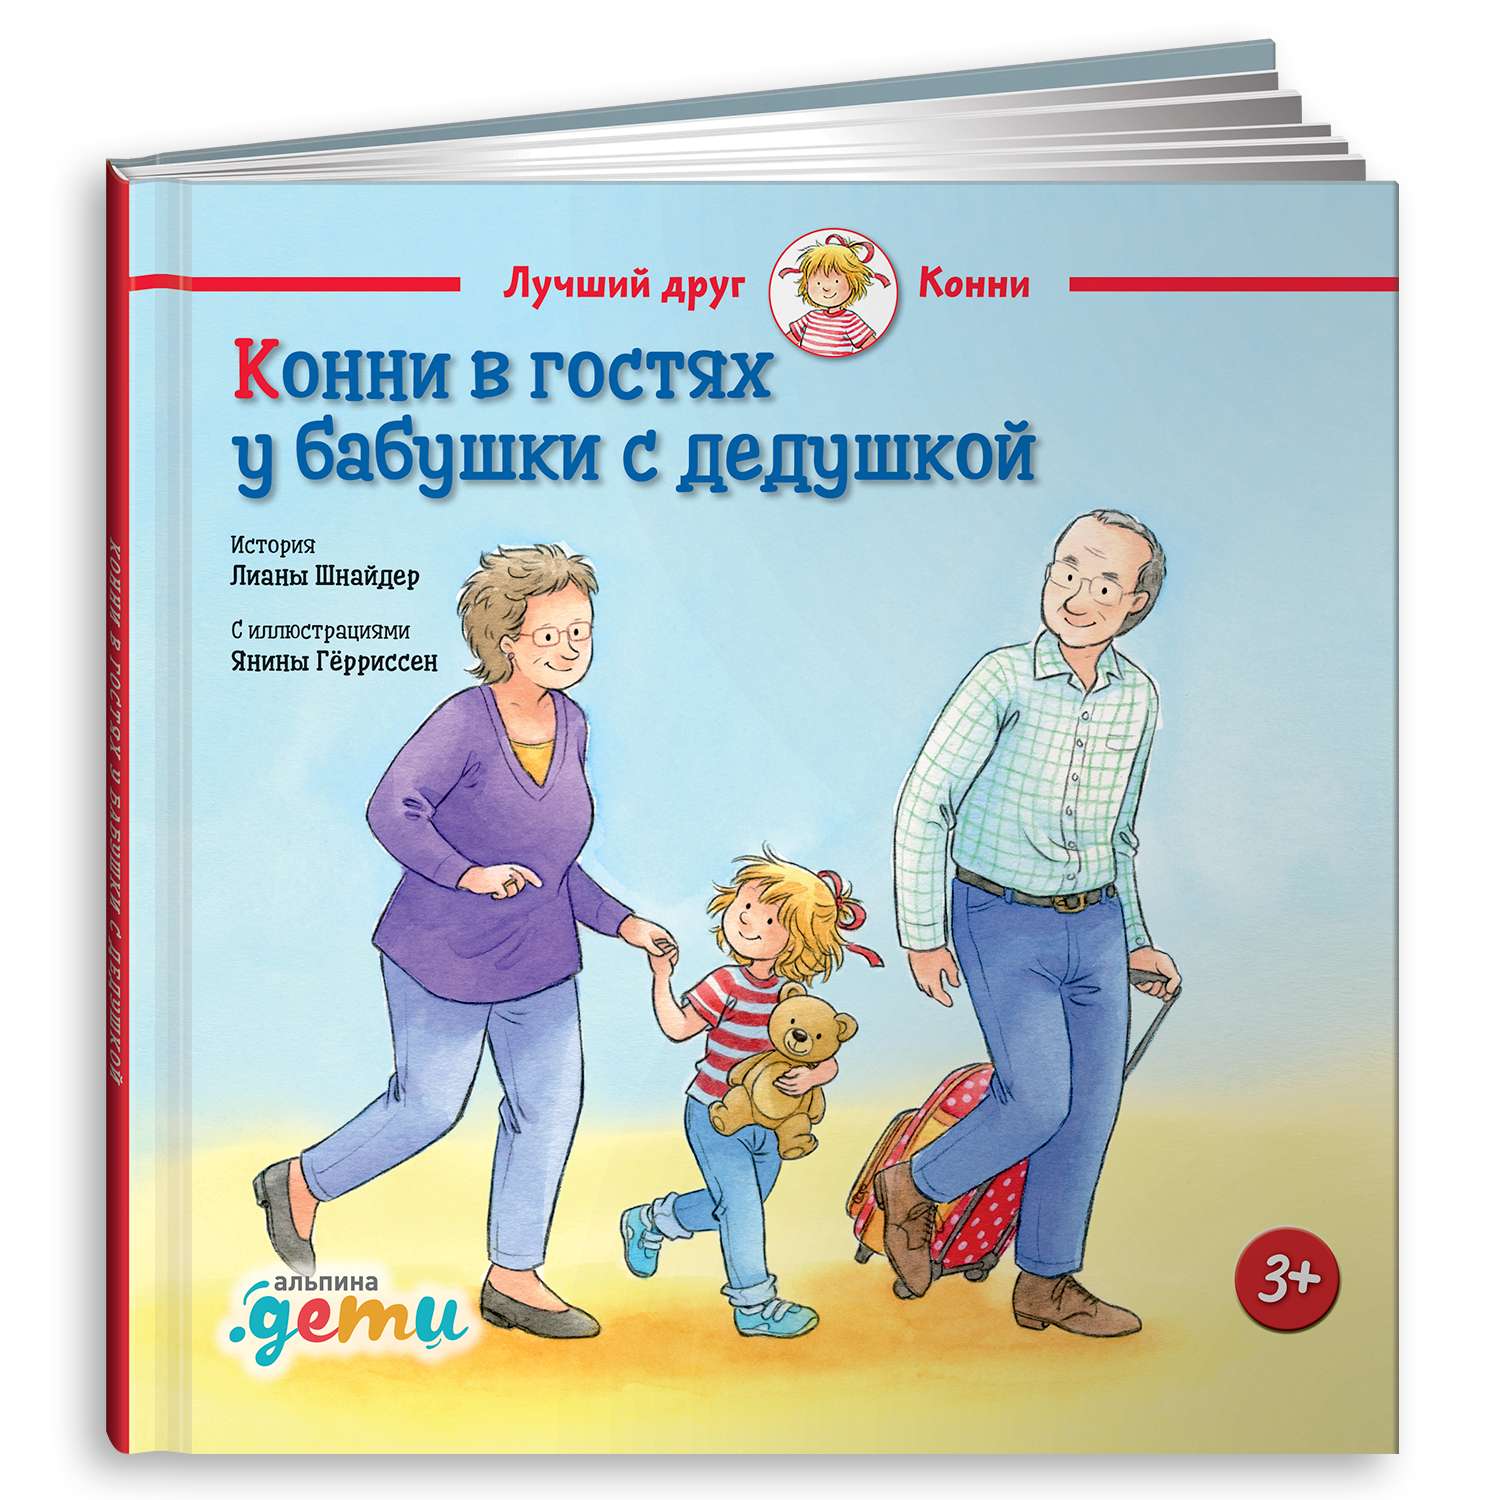 Книга Альпина. Дети Конни в гостях у бабушки с дедушкой - фото 1